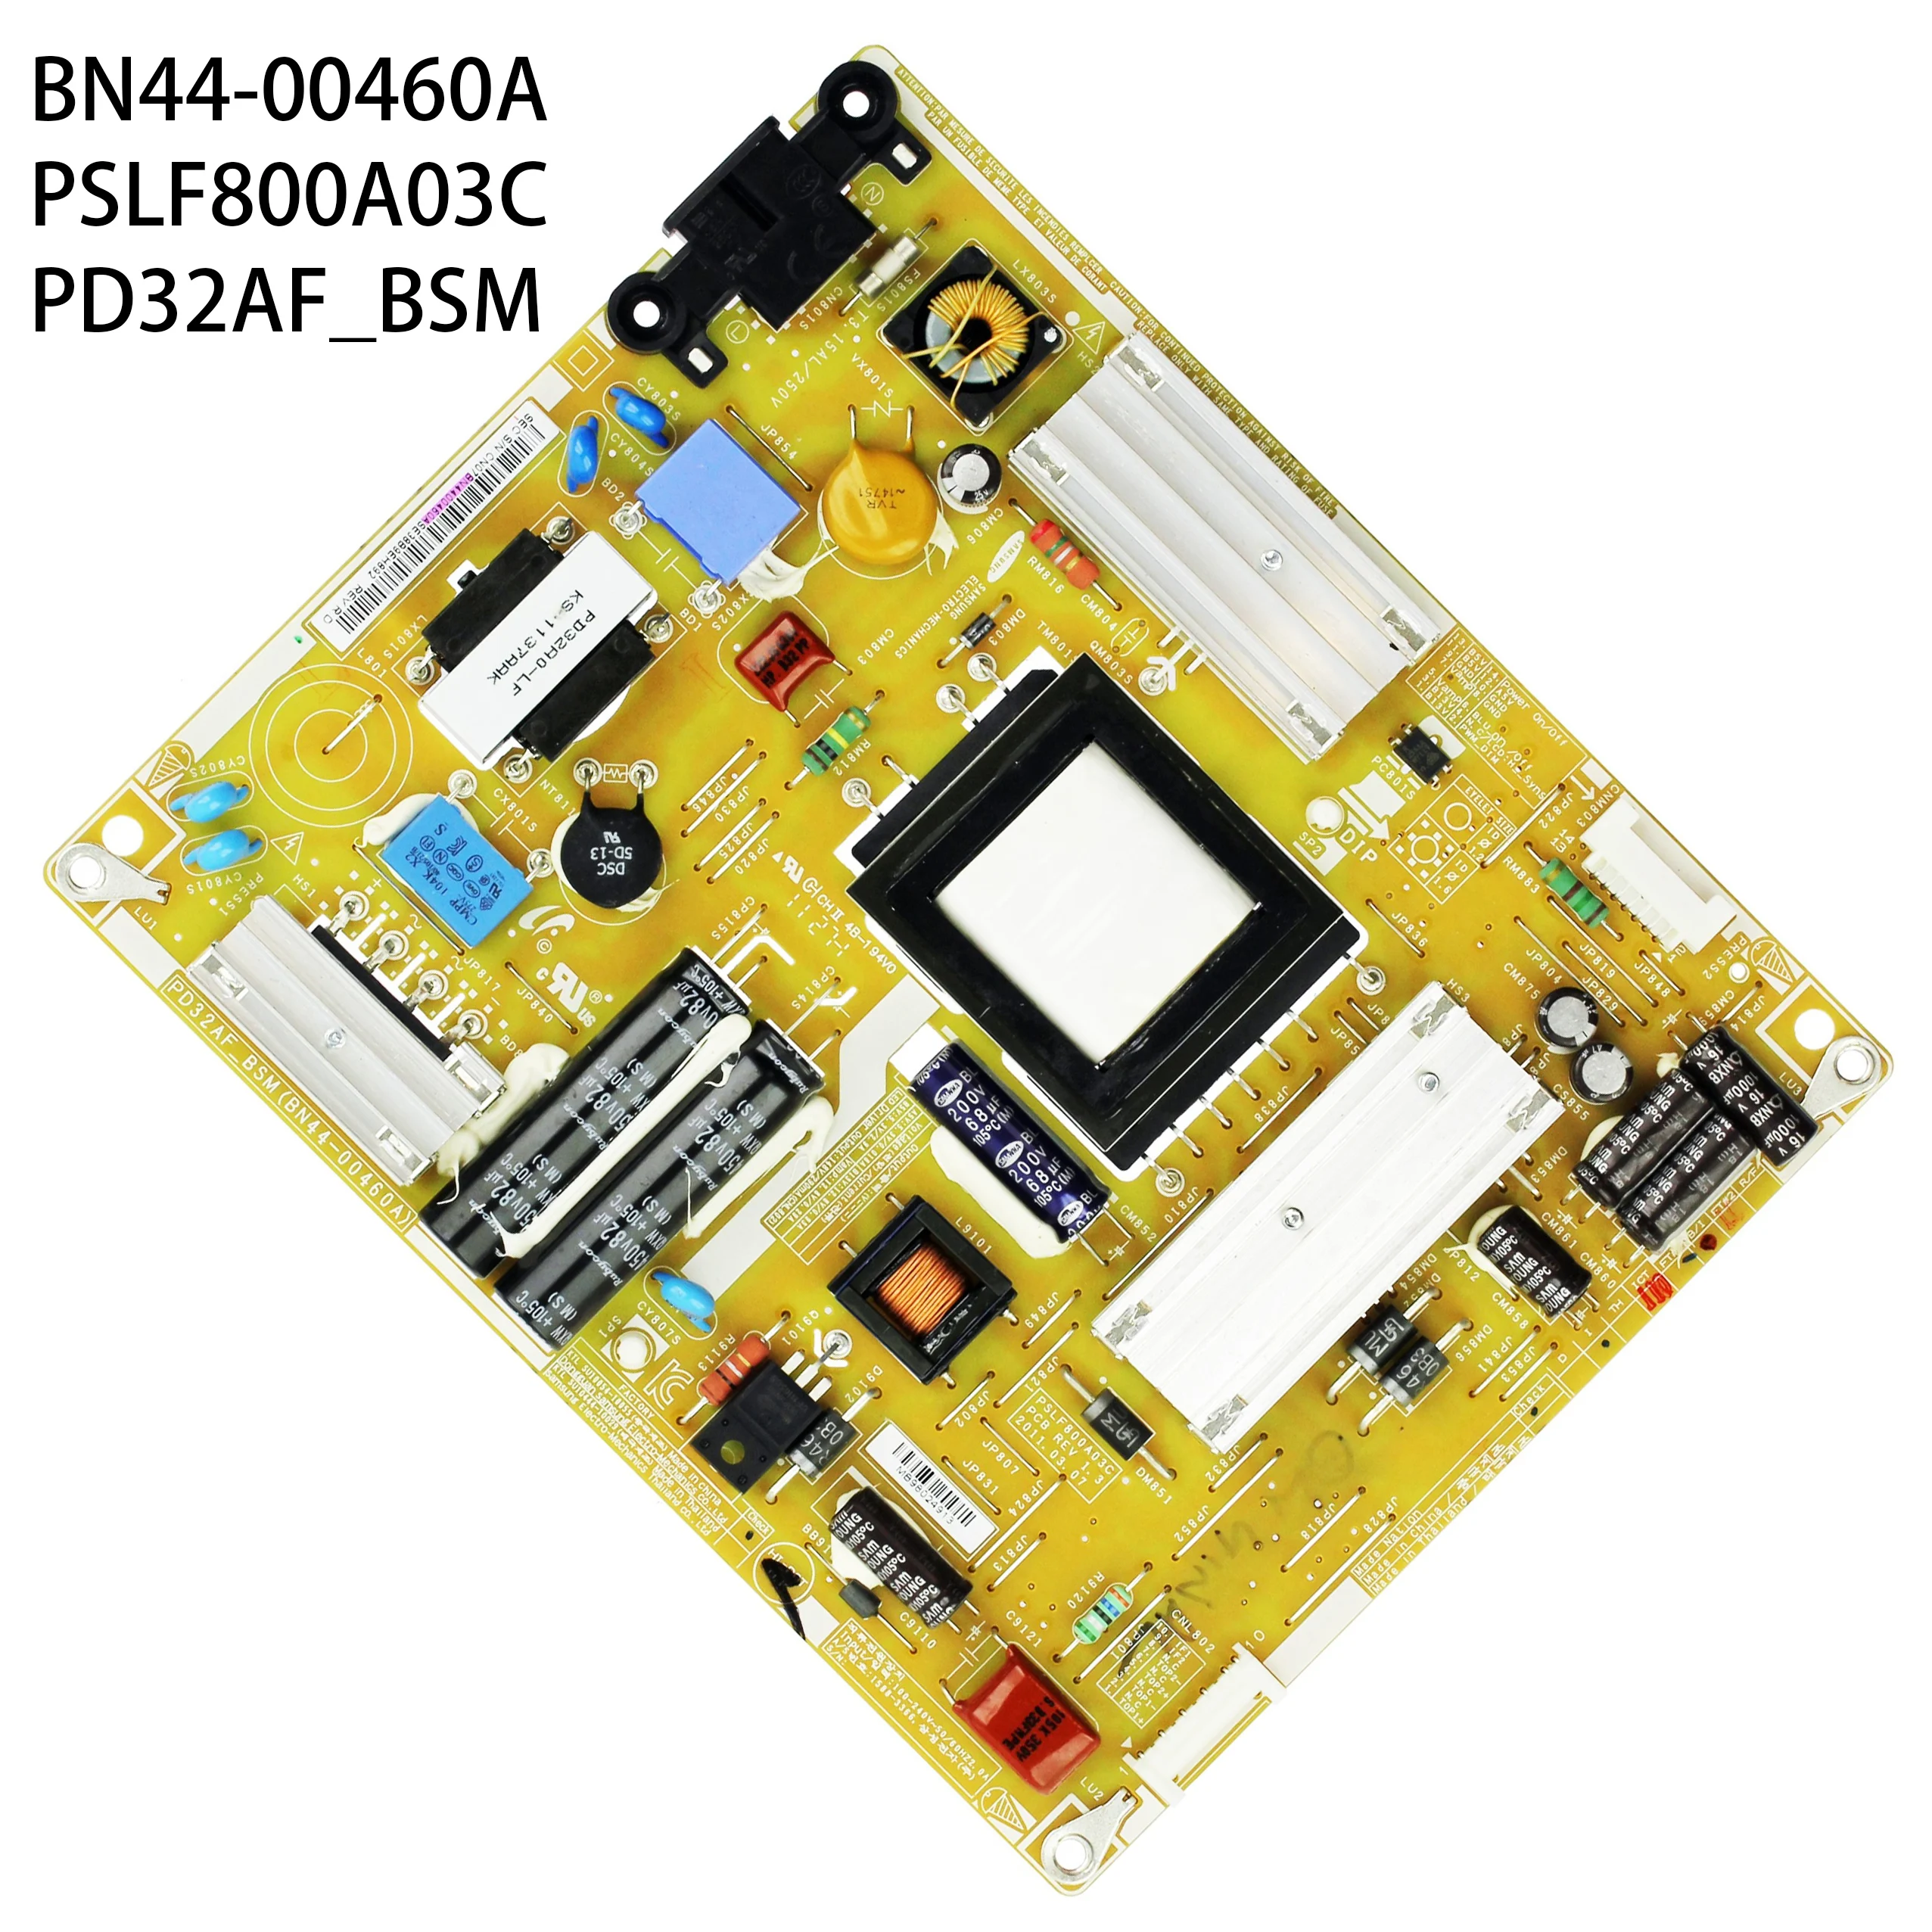 

BN44-00460A PSLF800A03C PD32AF_BSM Power Board is for UE32D5520 UA32D5000PR UE32D5000PW UE32D5500 UN32D5500RF UA32D4000 32 Inch